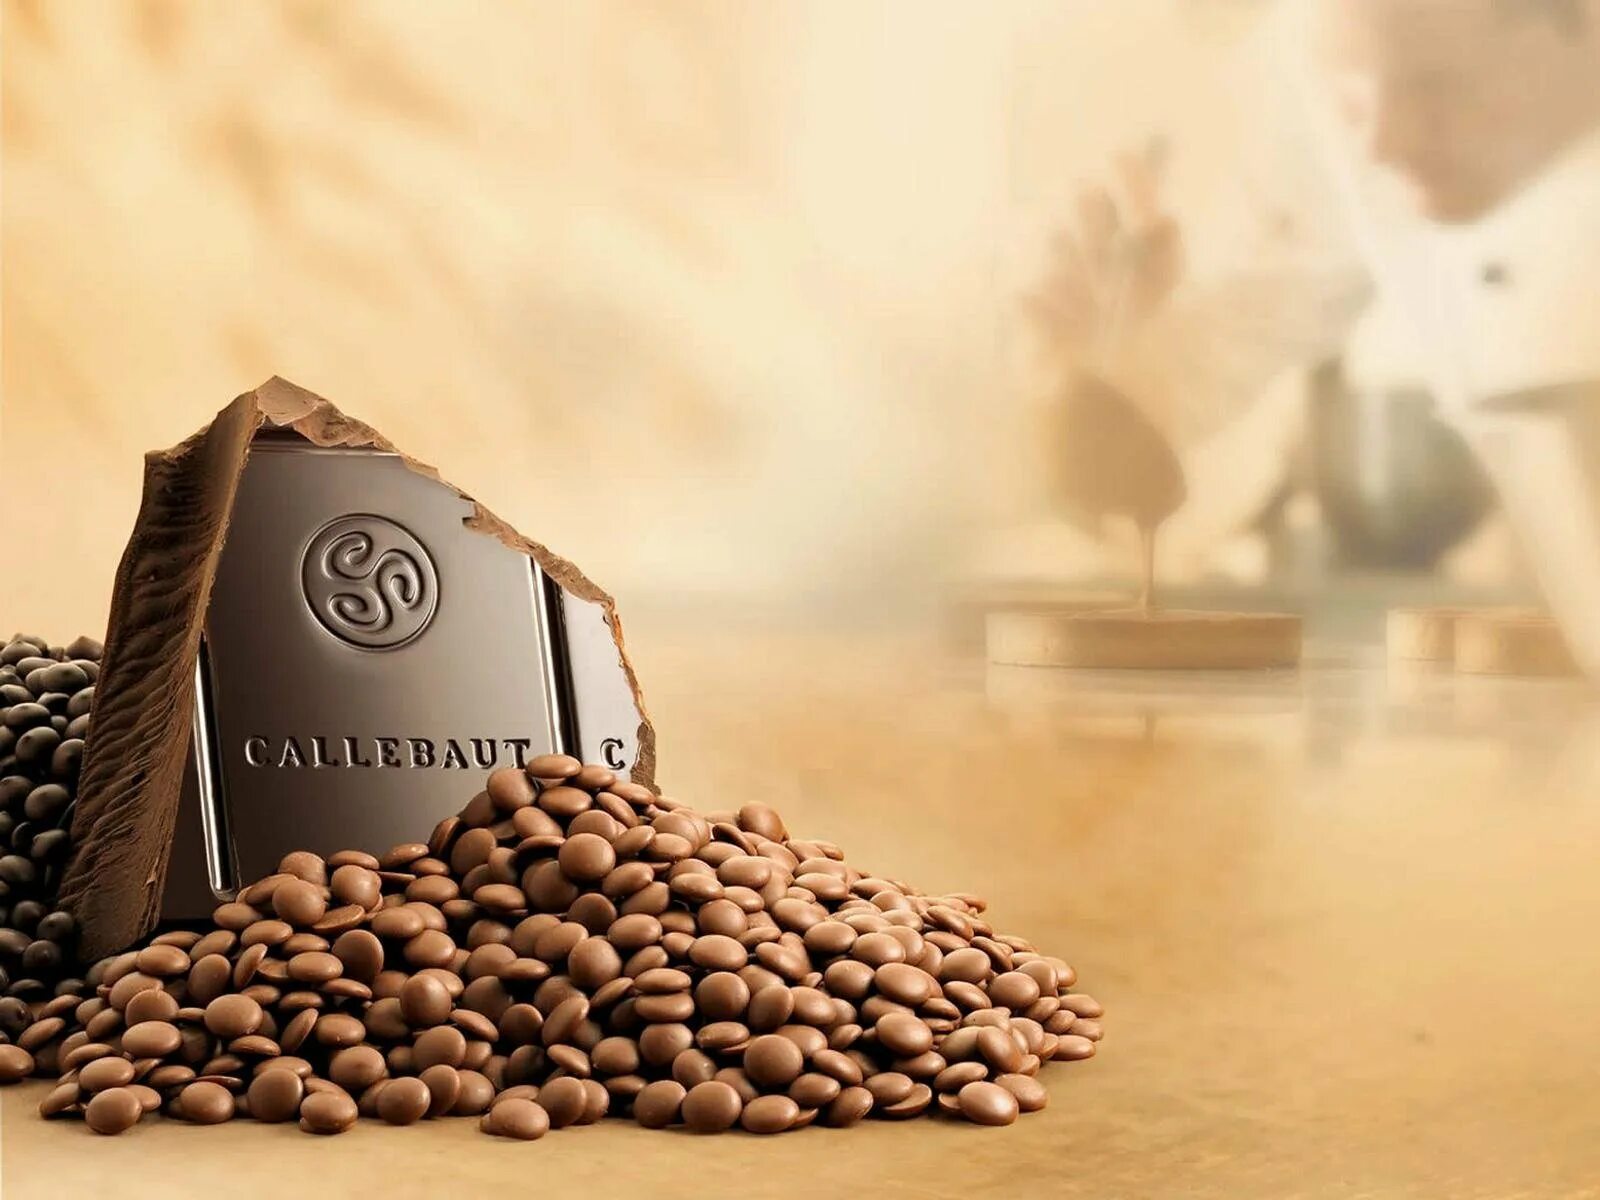 Барри каллебаут нл. Бельгийский шоколад Callebaut. Шоколад Callebaut 823 молочный. Шоколад Барри Каллебаут. Бельгийский шоколад Каллебаут.